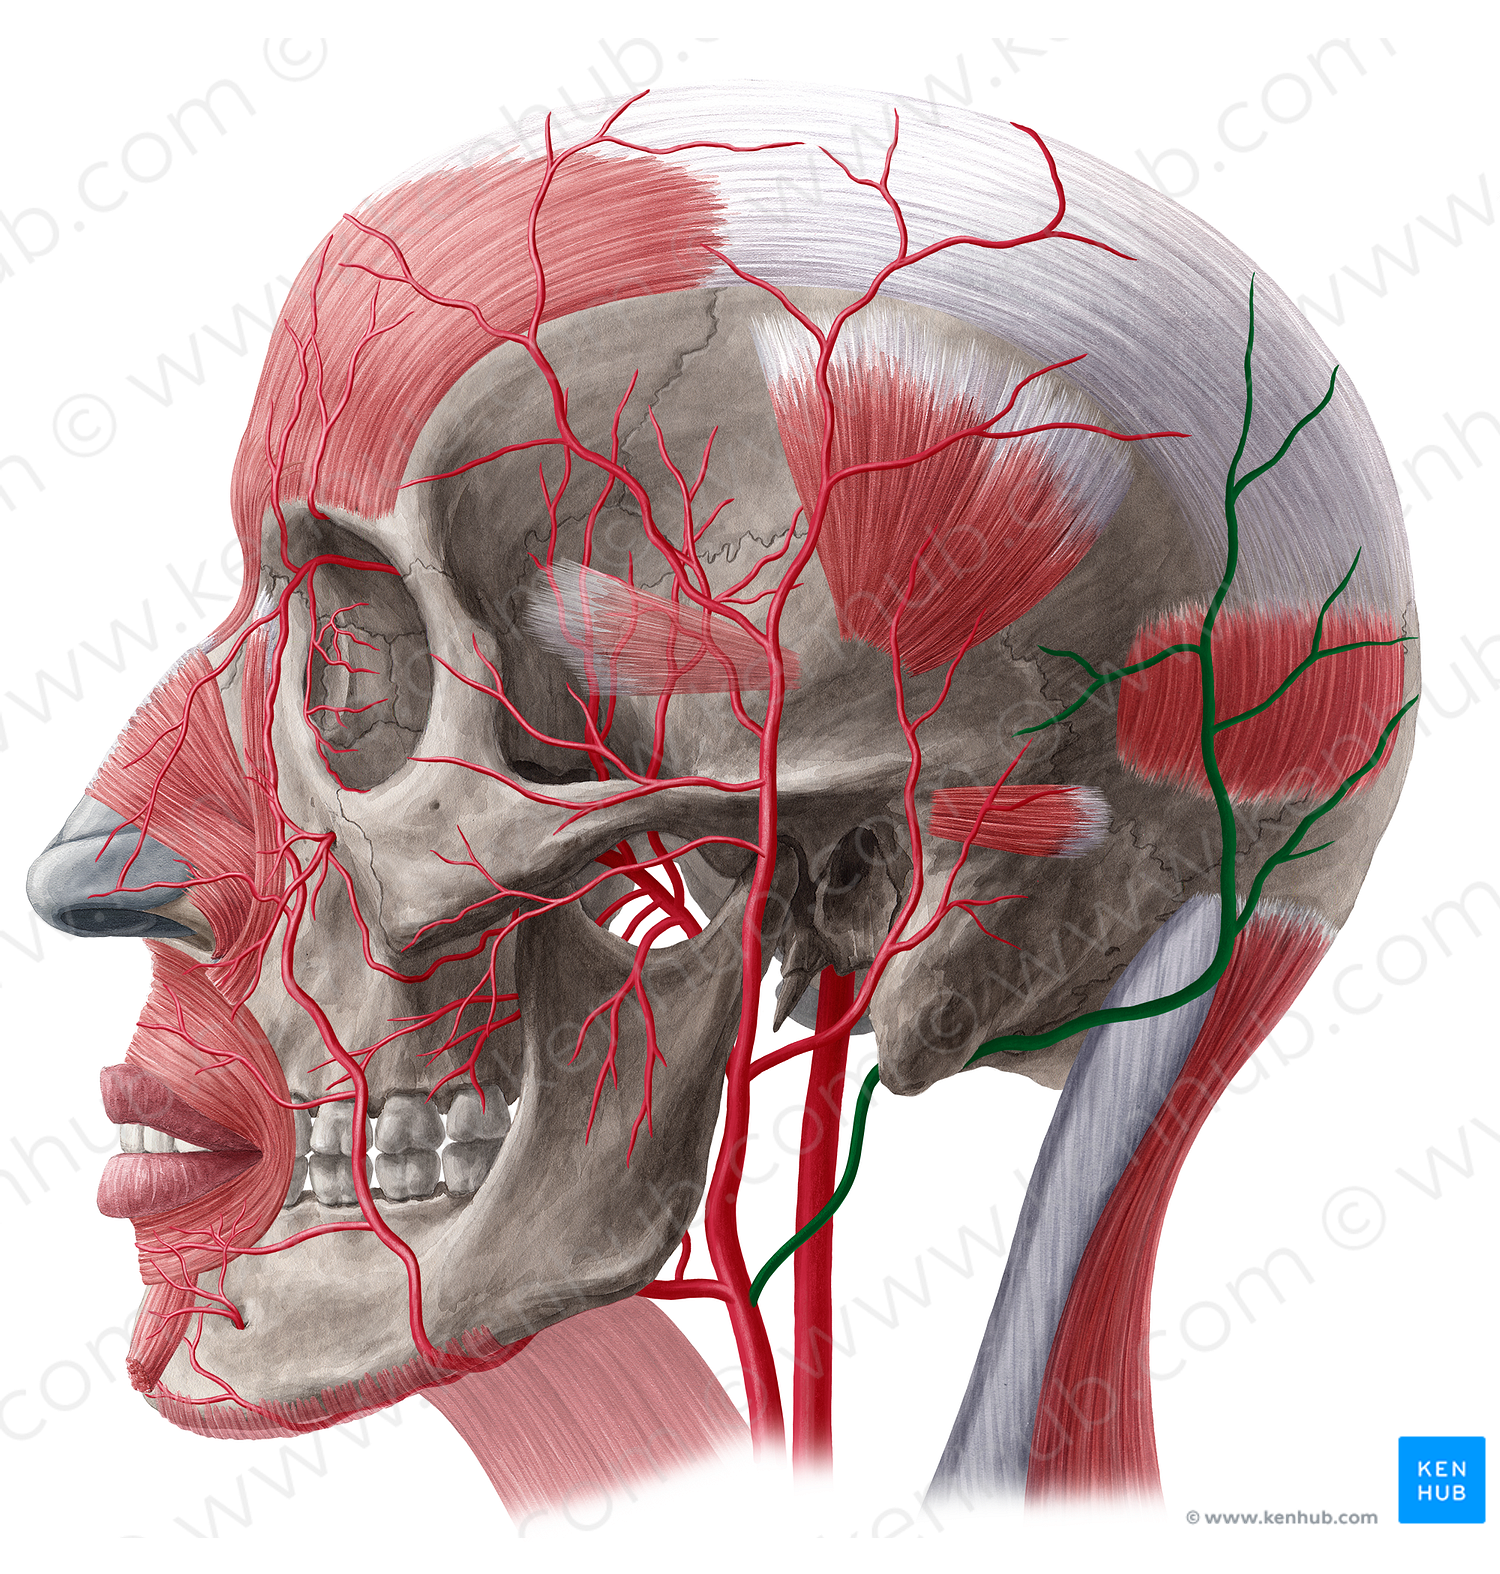 Occipital artery (#1559)